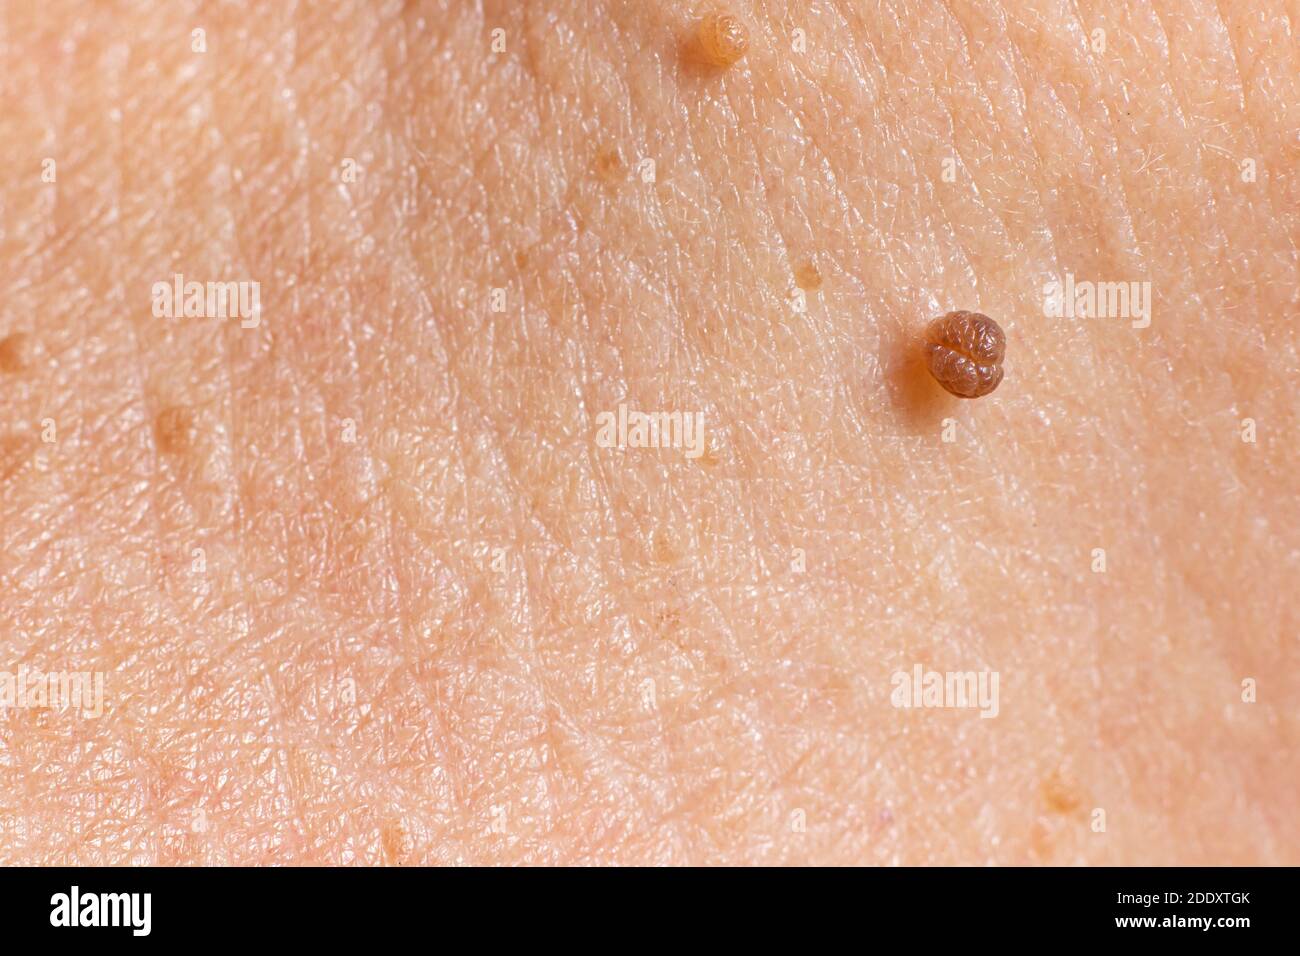 Papilloma sulla pelle umana - tumore benigno sotto forma di mole, nevo, tumore. Papillomatosi Foto Stock